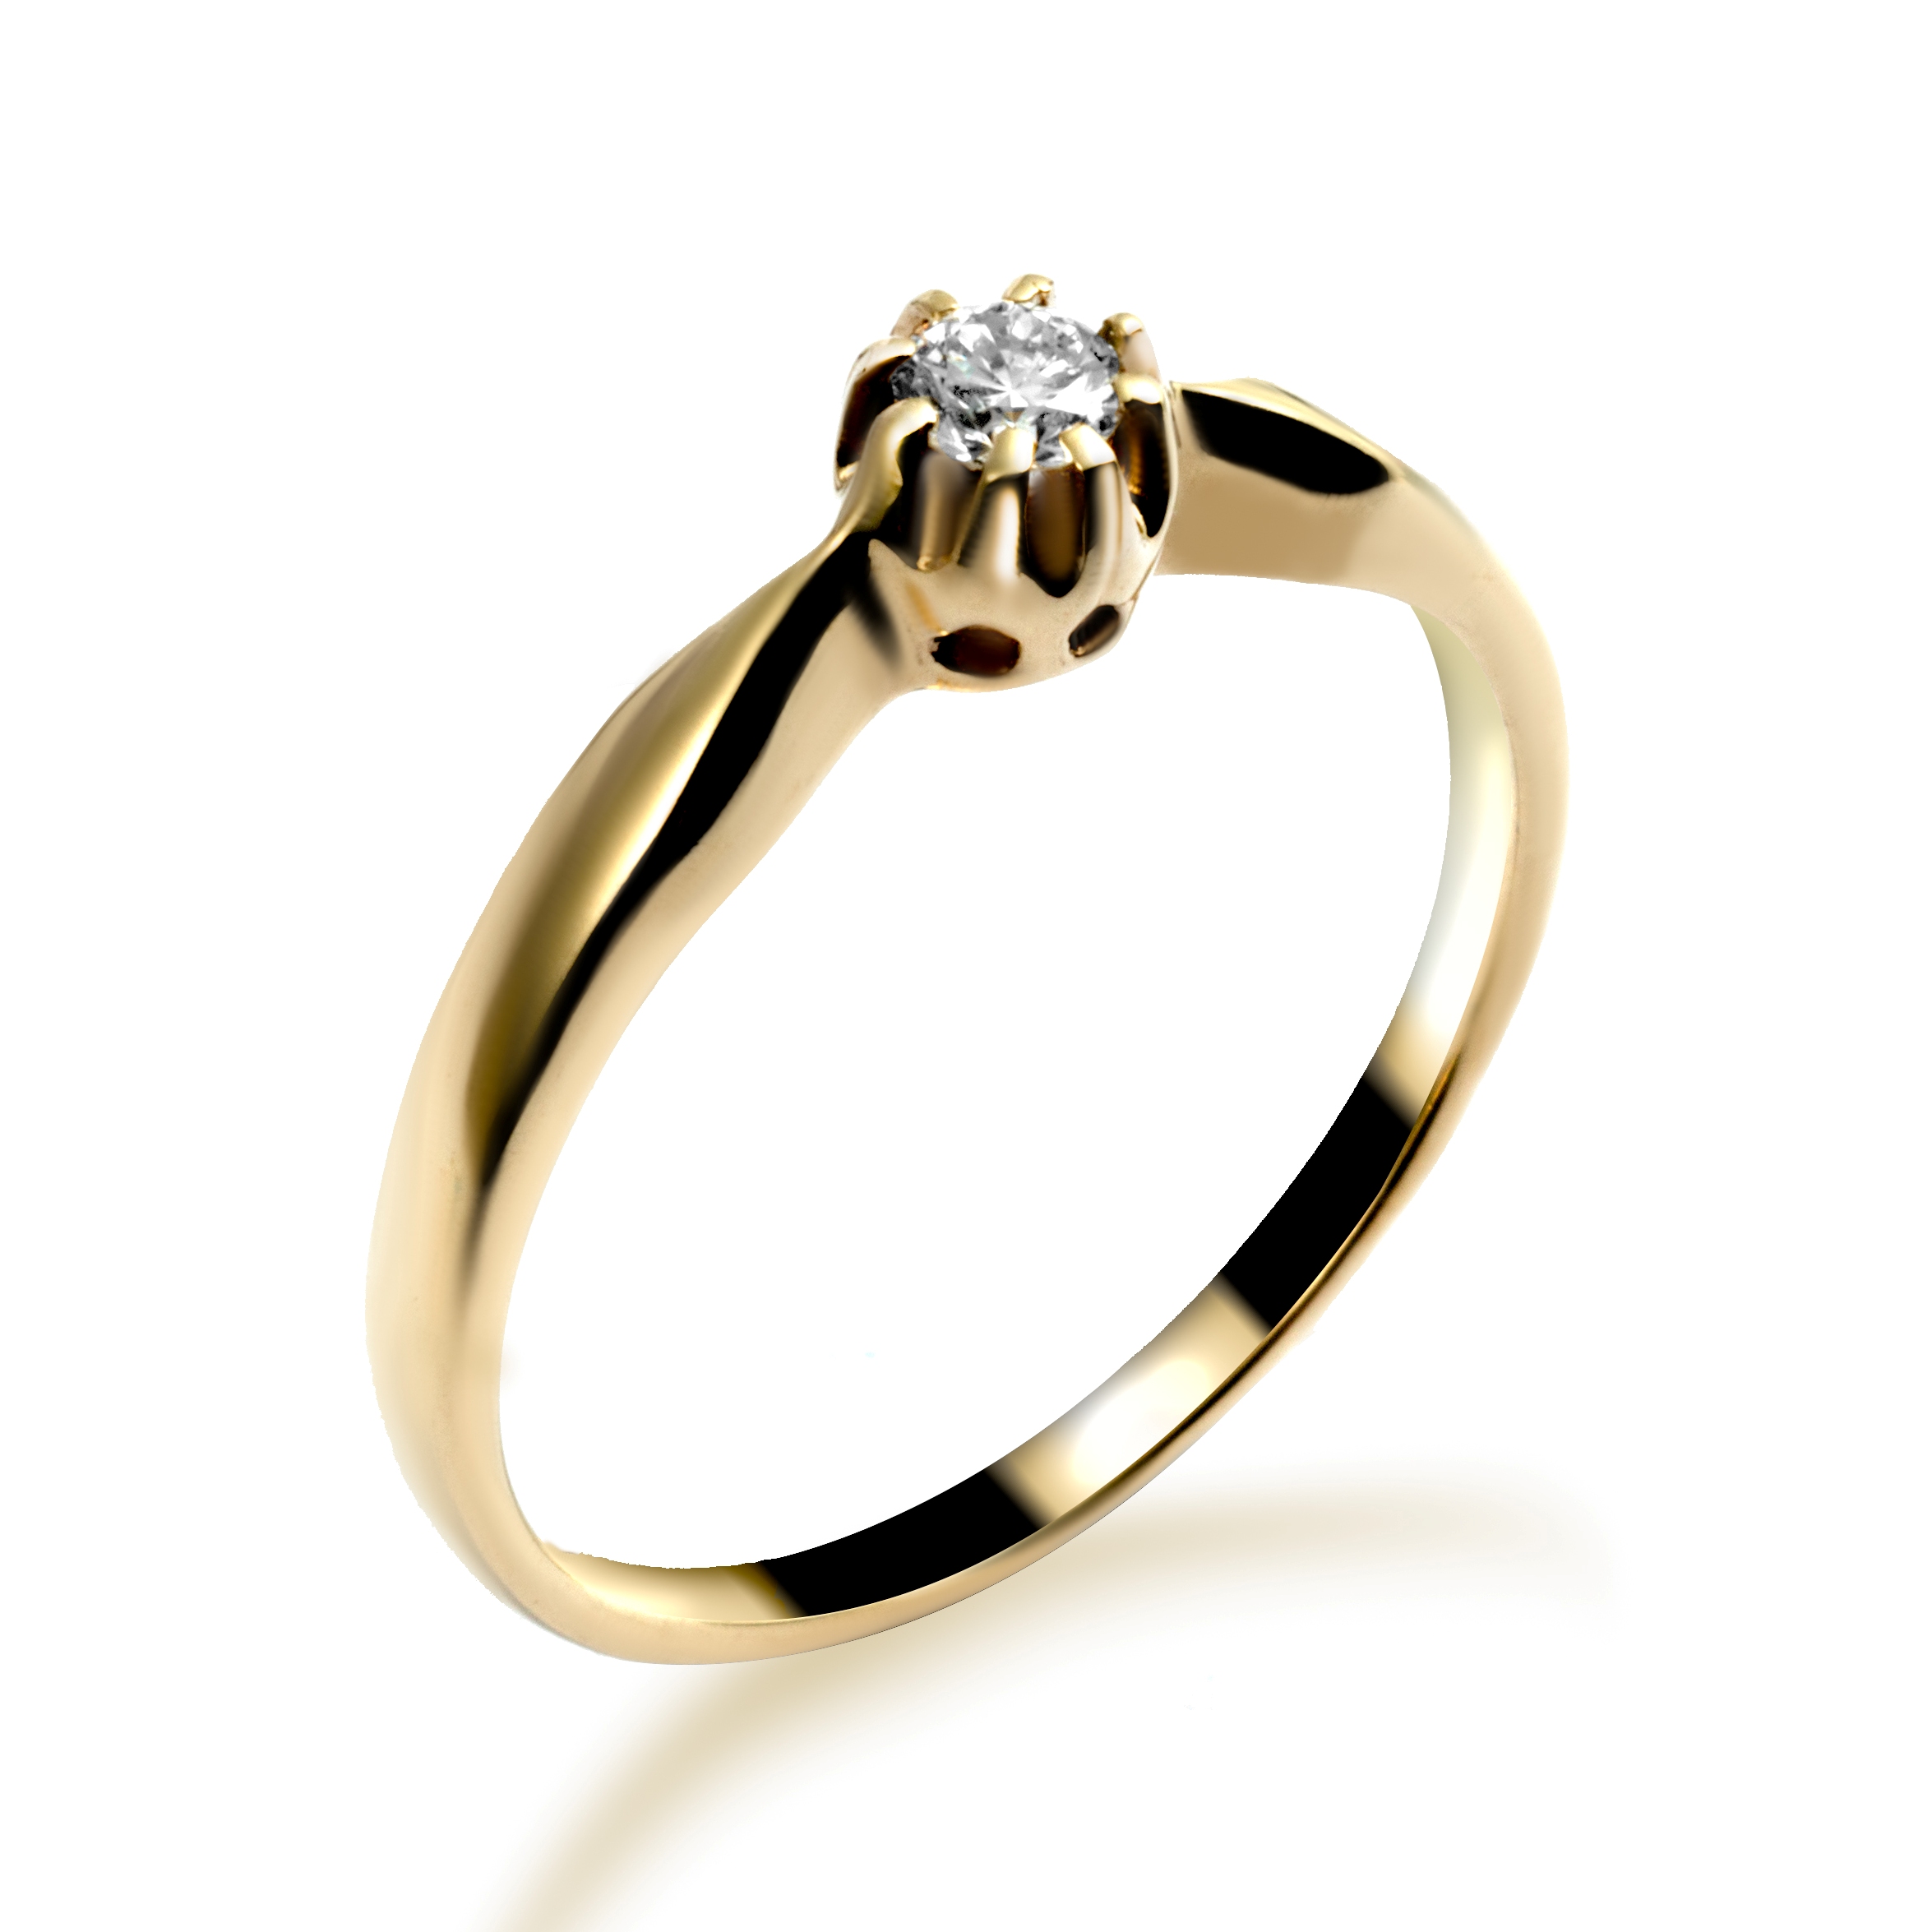 Diament w koronie - złoty pierścionek z diamentem - widok z góry